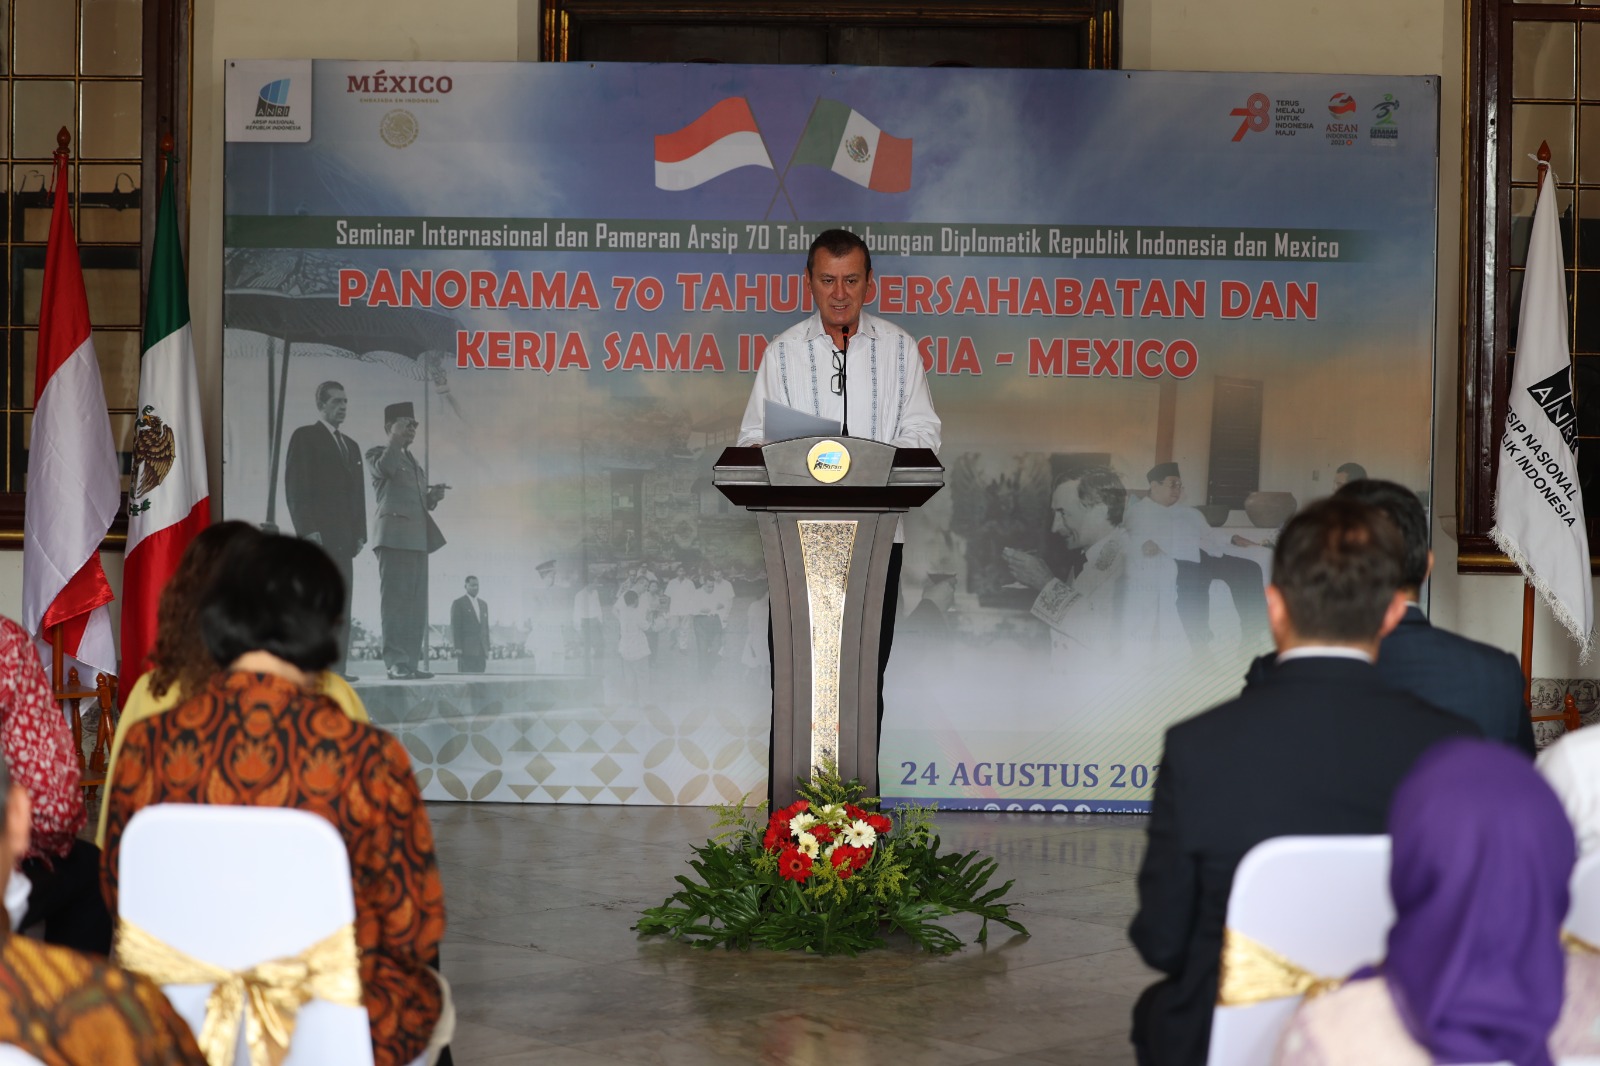 Dubes Meksiko: Pameran Arsip dan Seminar untuk Kenang Kontribusi Hubungan Baik Indonesia – Meksiko